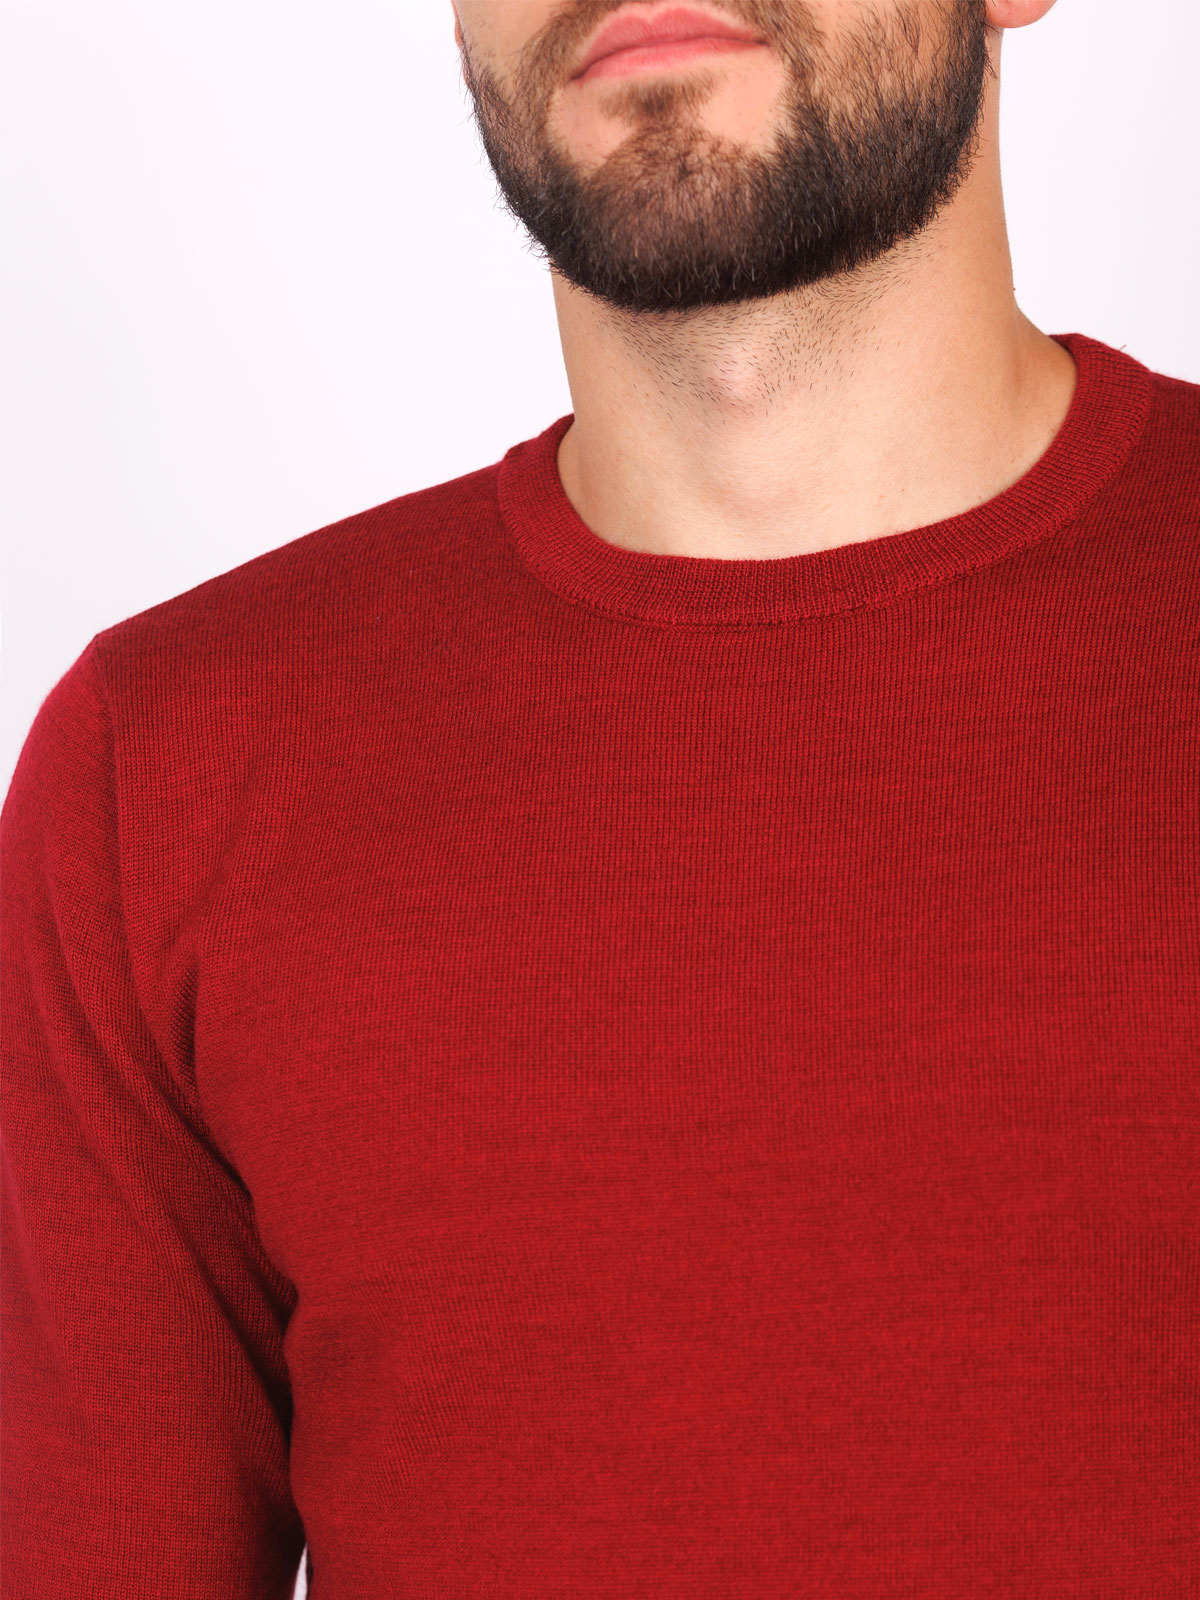 Merino sweater in burgundy - 33093 € 42.74 img3